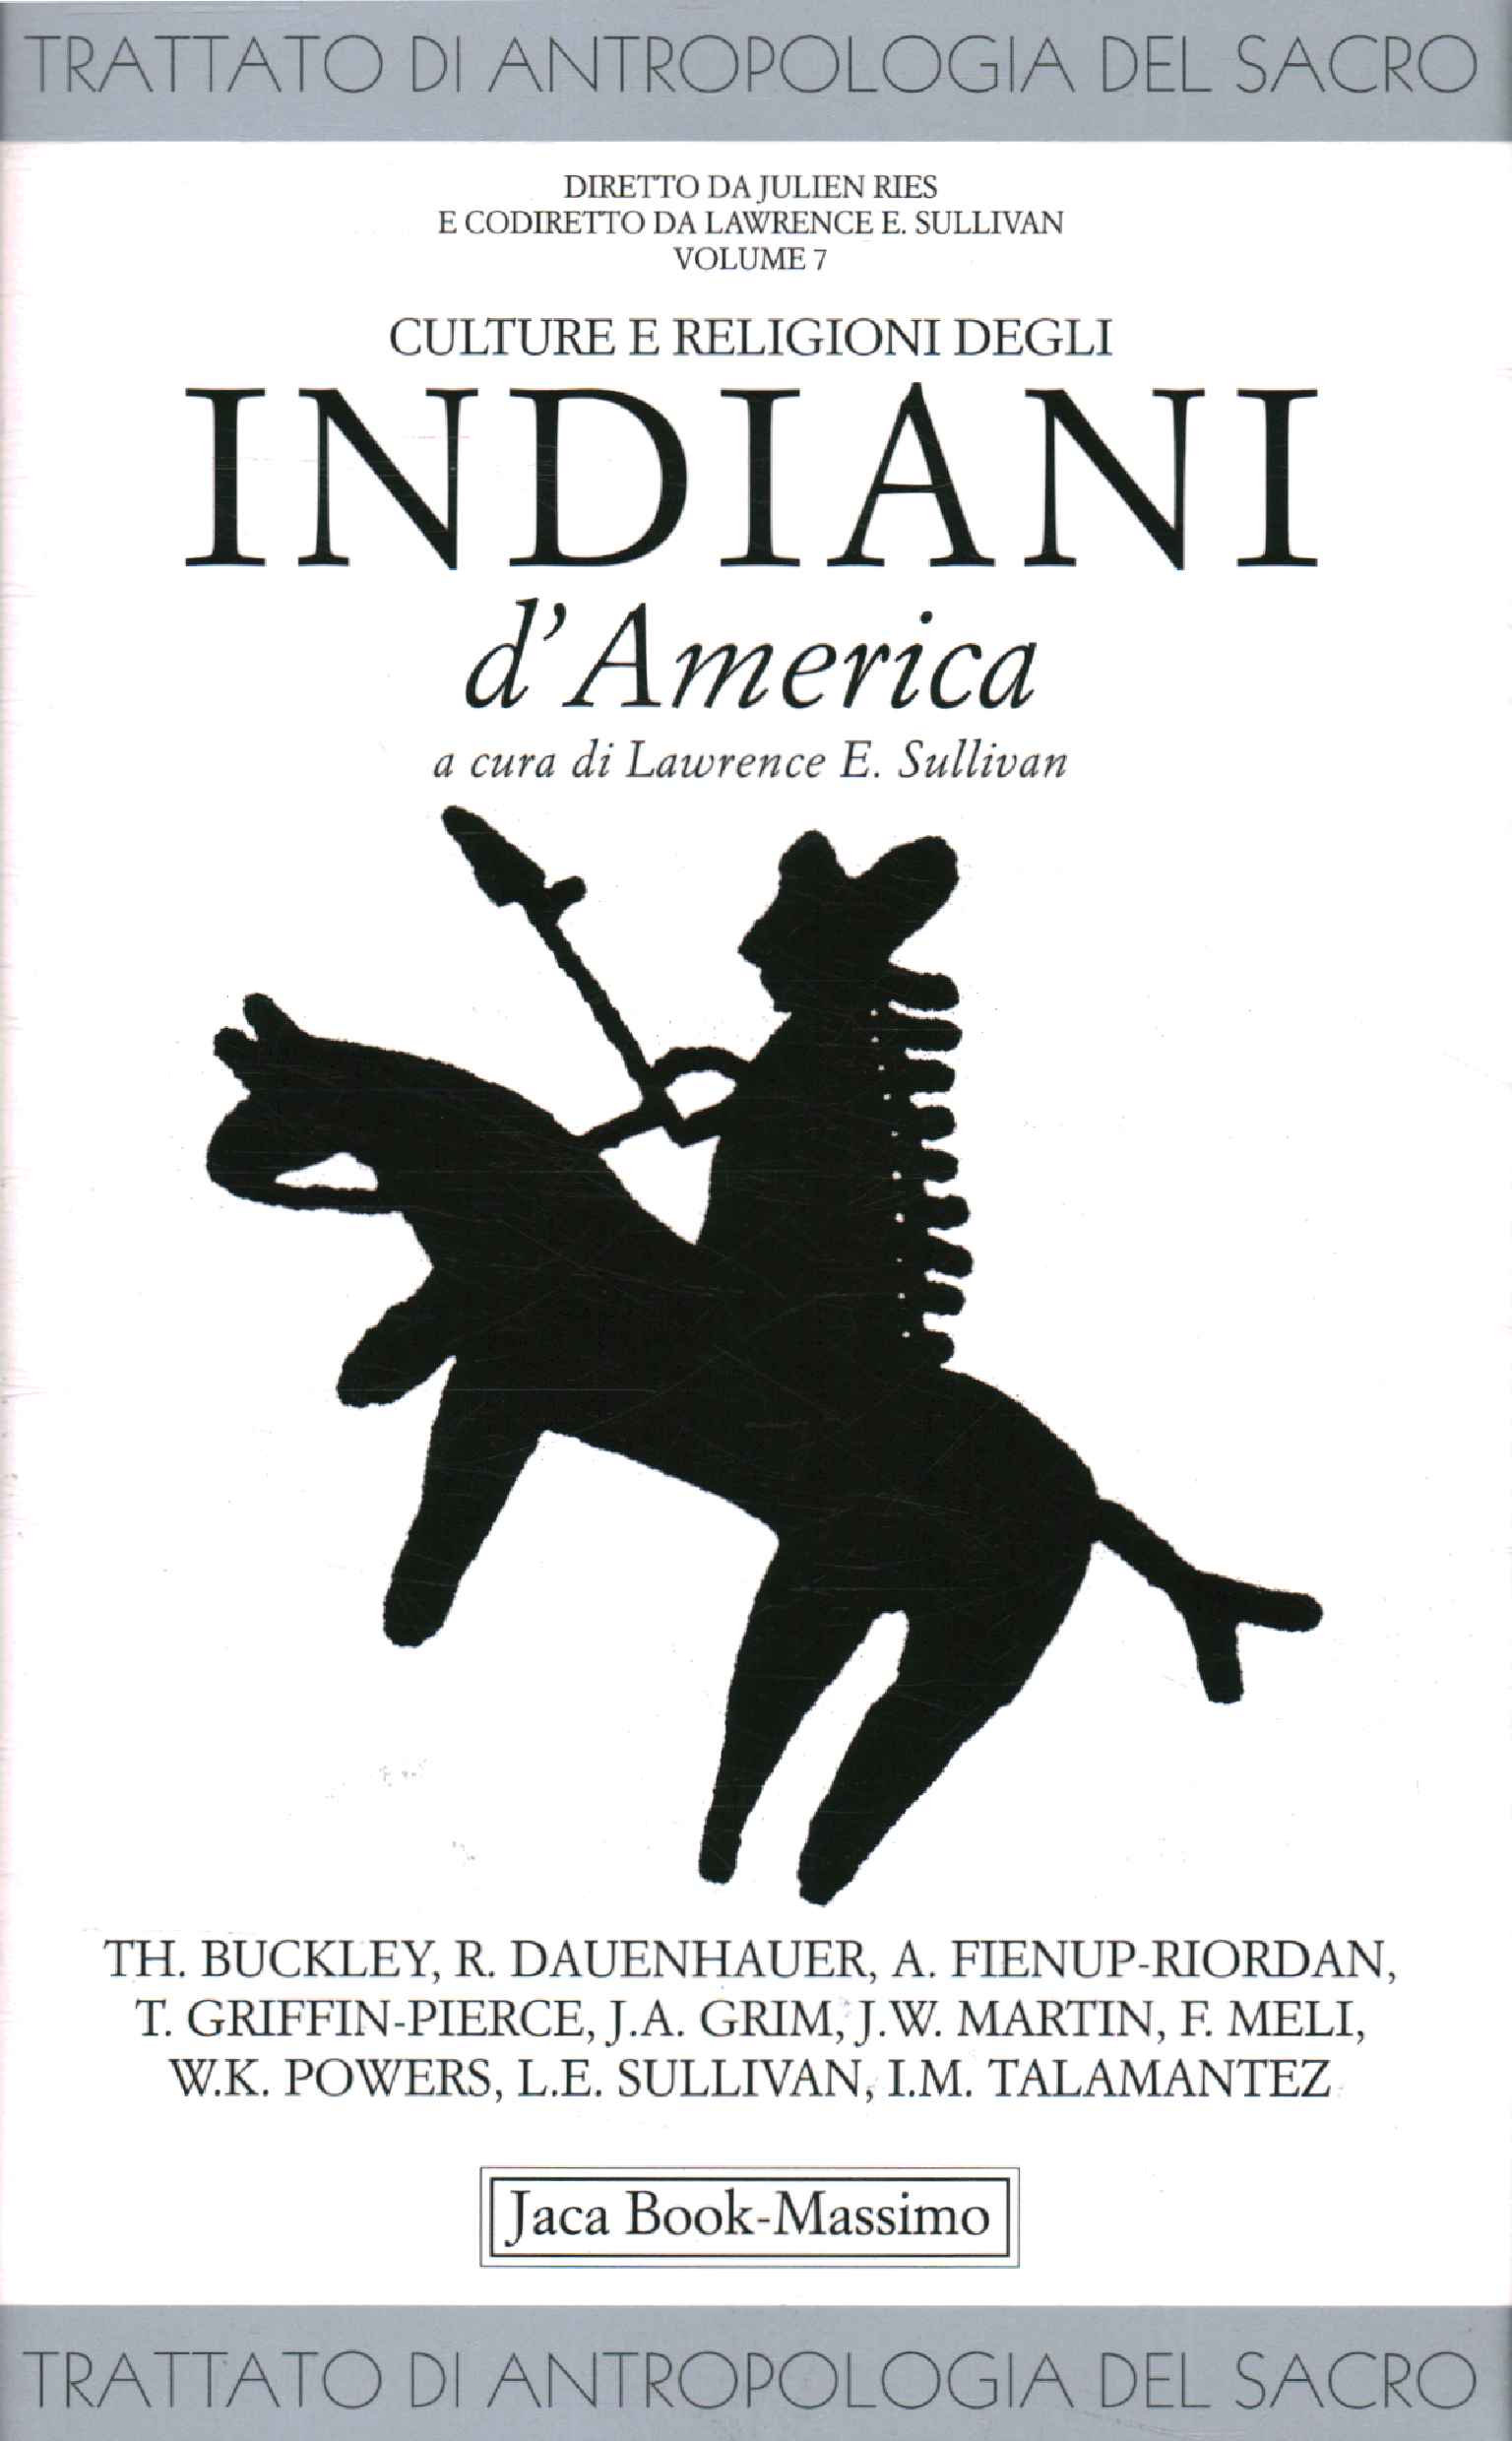 Kulturen und Religionen der Indianer d0apos